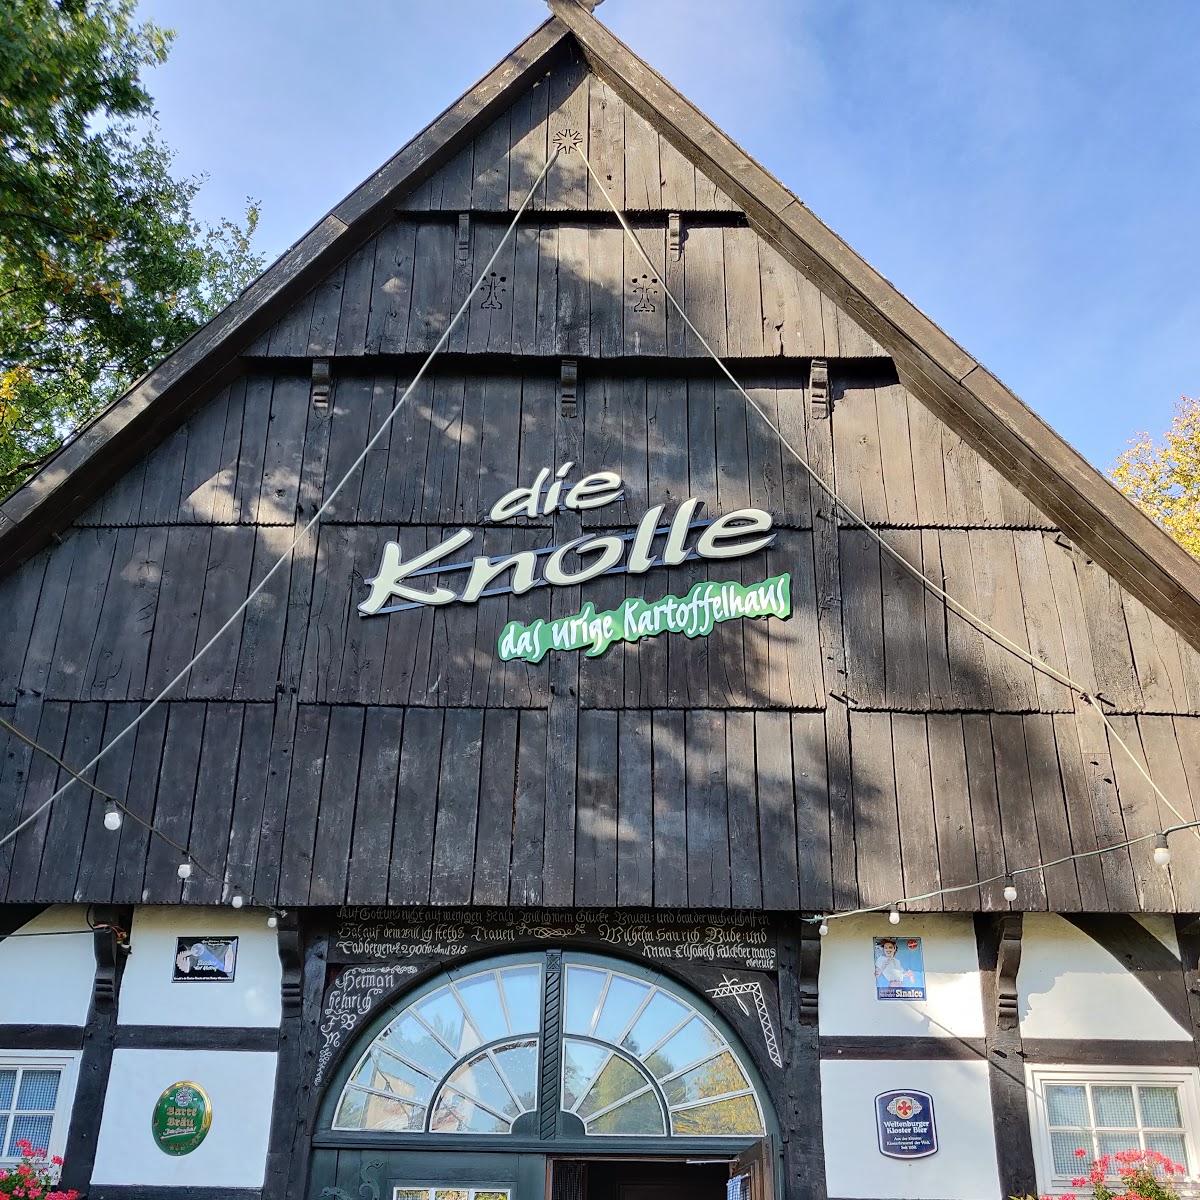 Restaurant "Die Knolle" in  Bünde